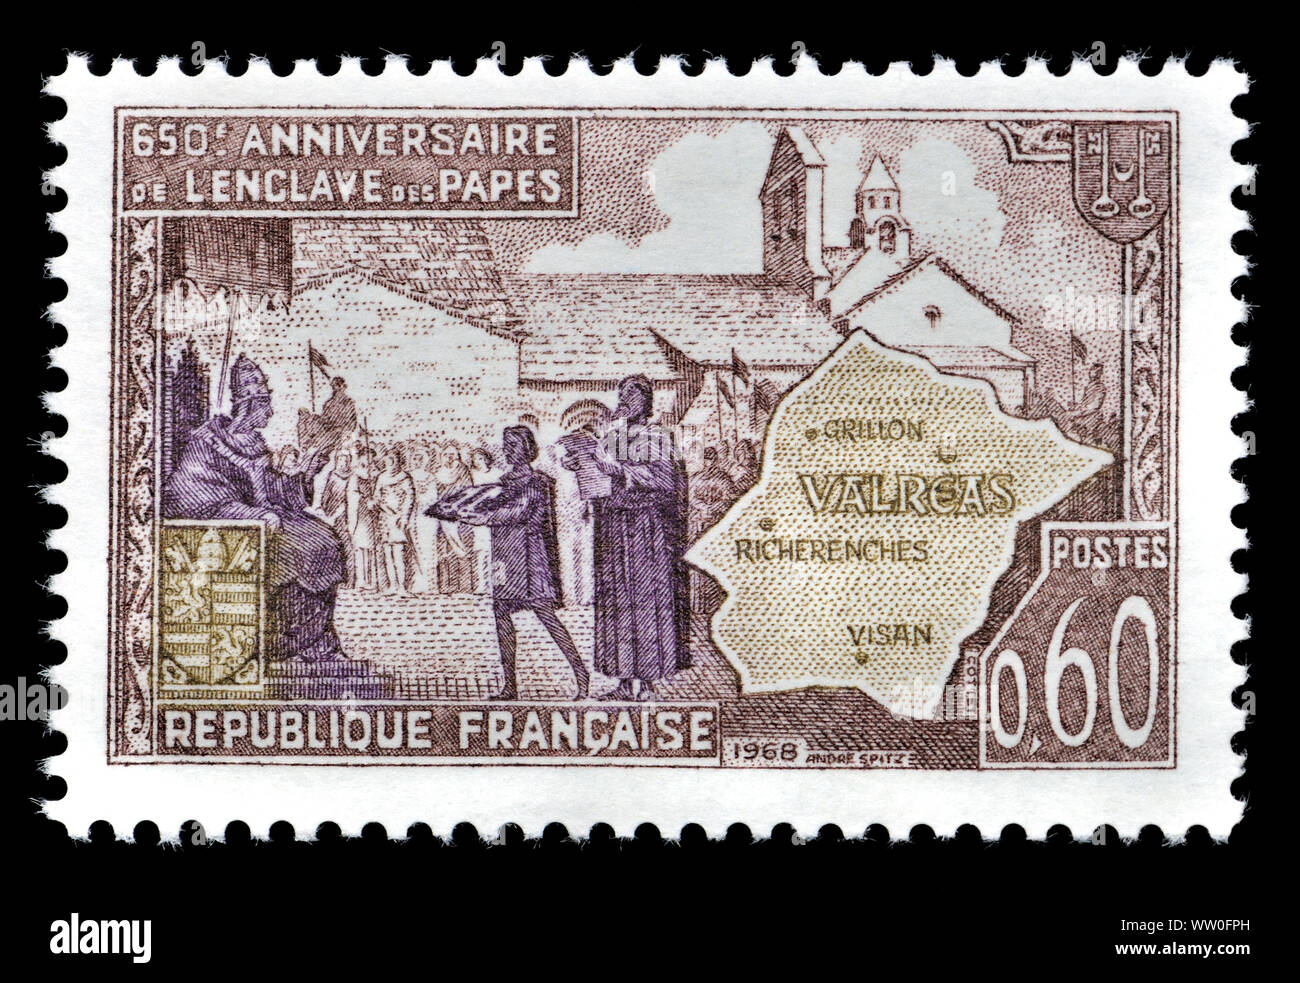 Timbre-poste français (1968) : 650e anniversaire de la "enclave des Papes"  dans le Canton de Valréas Photo Stock - Alamy